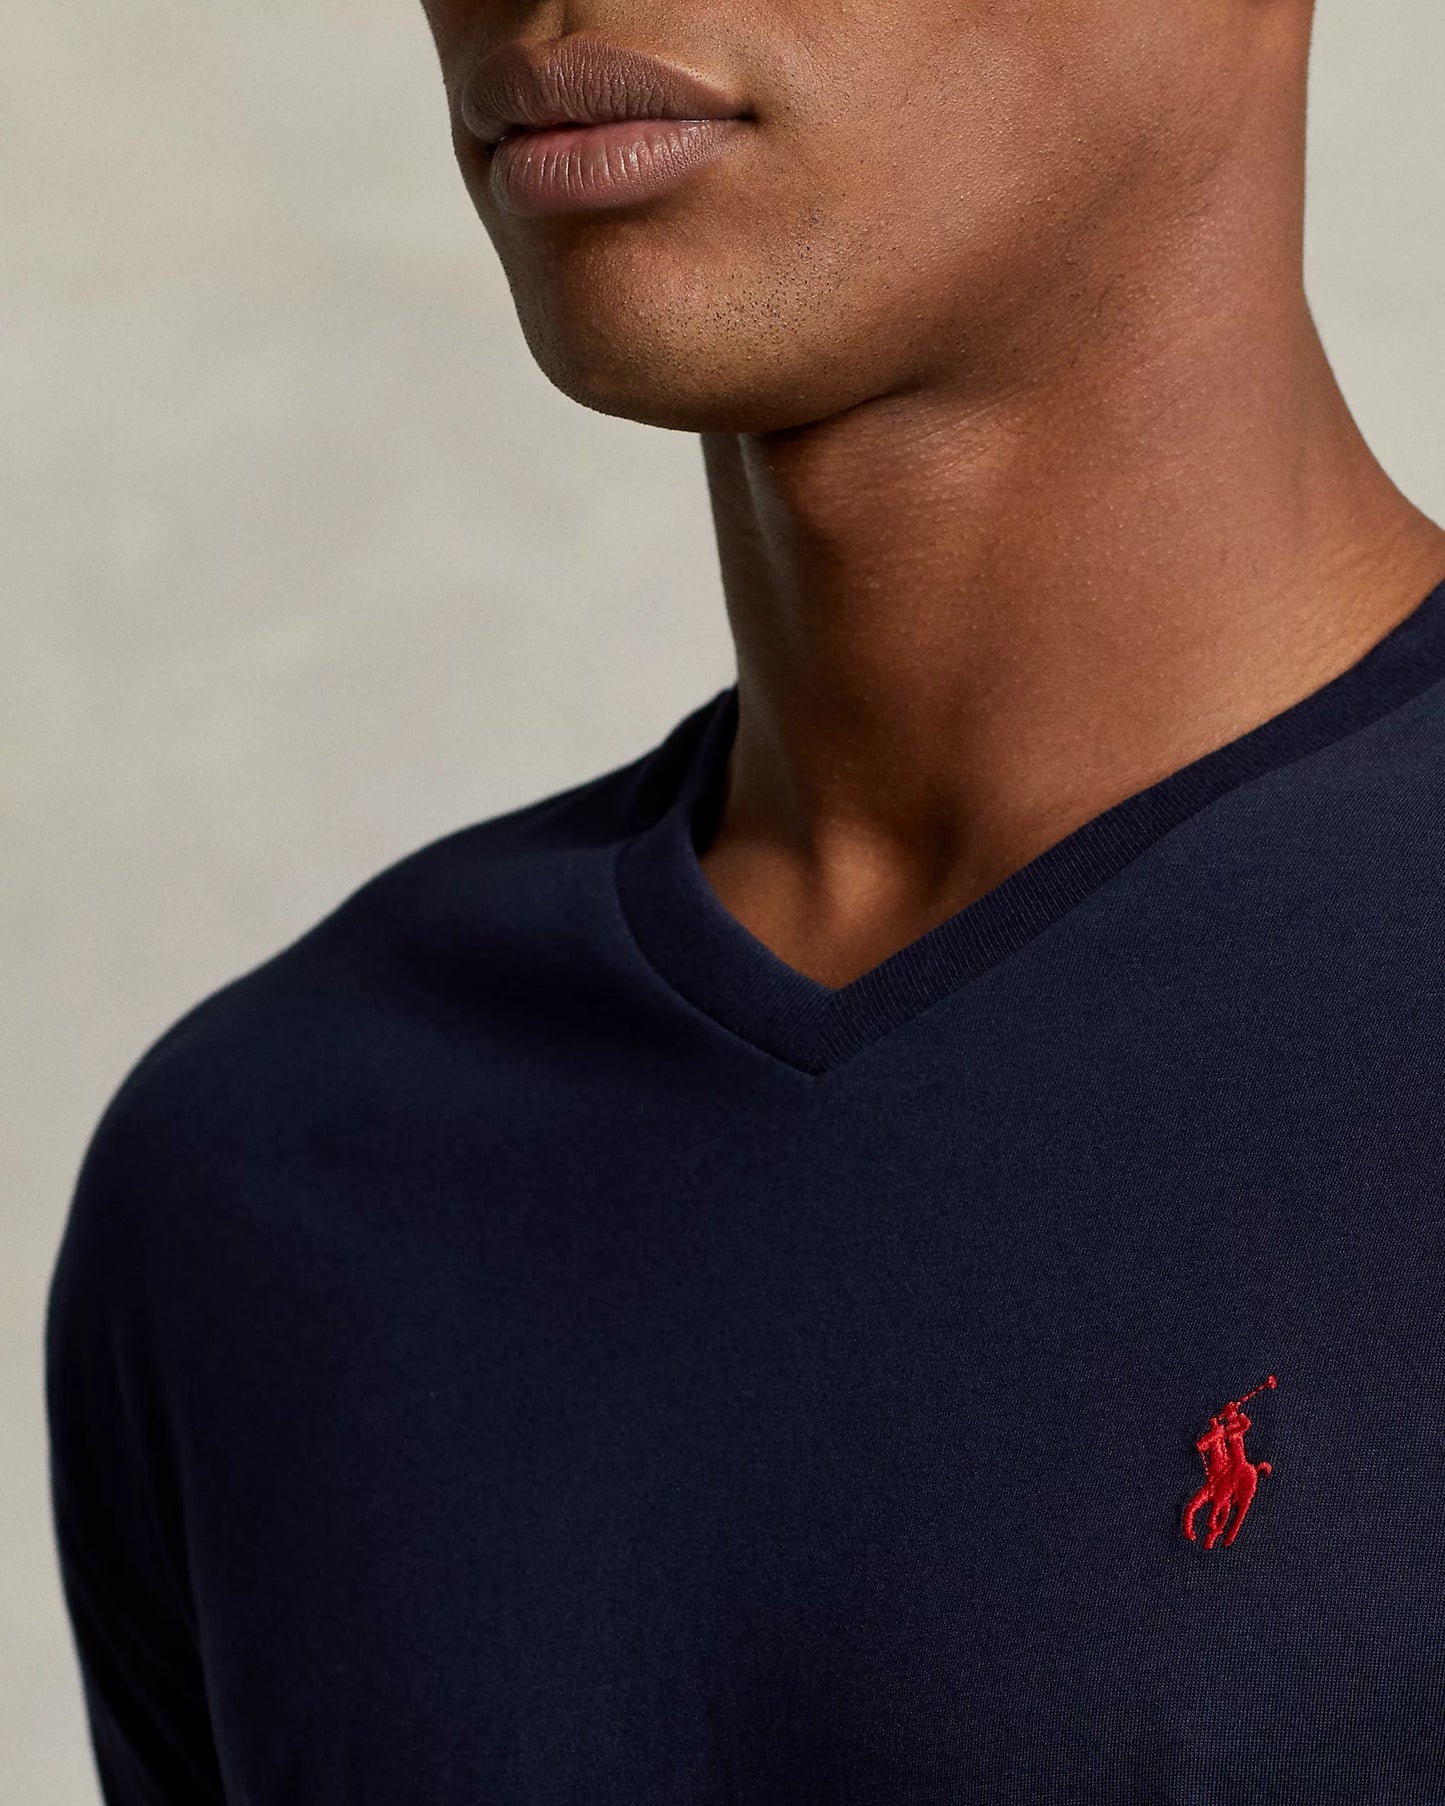 Polo Ralph Lauren Men's Classic-Fit Cotton V-Neck T-Shirt  Color Ink Blue Size L